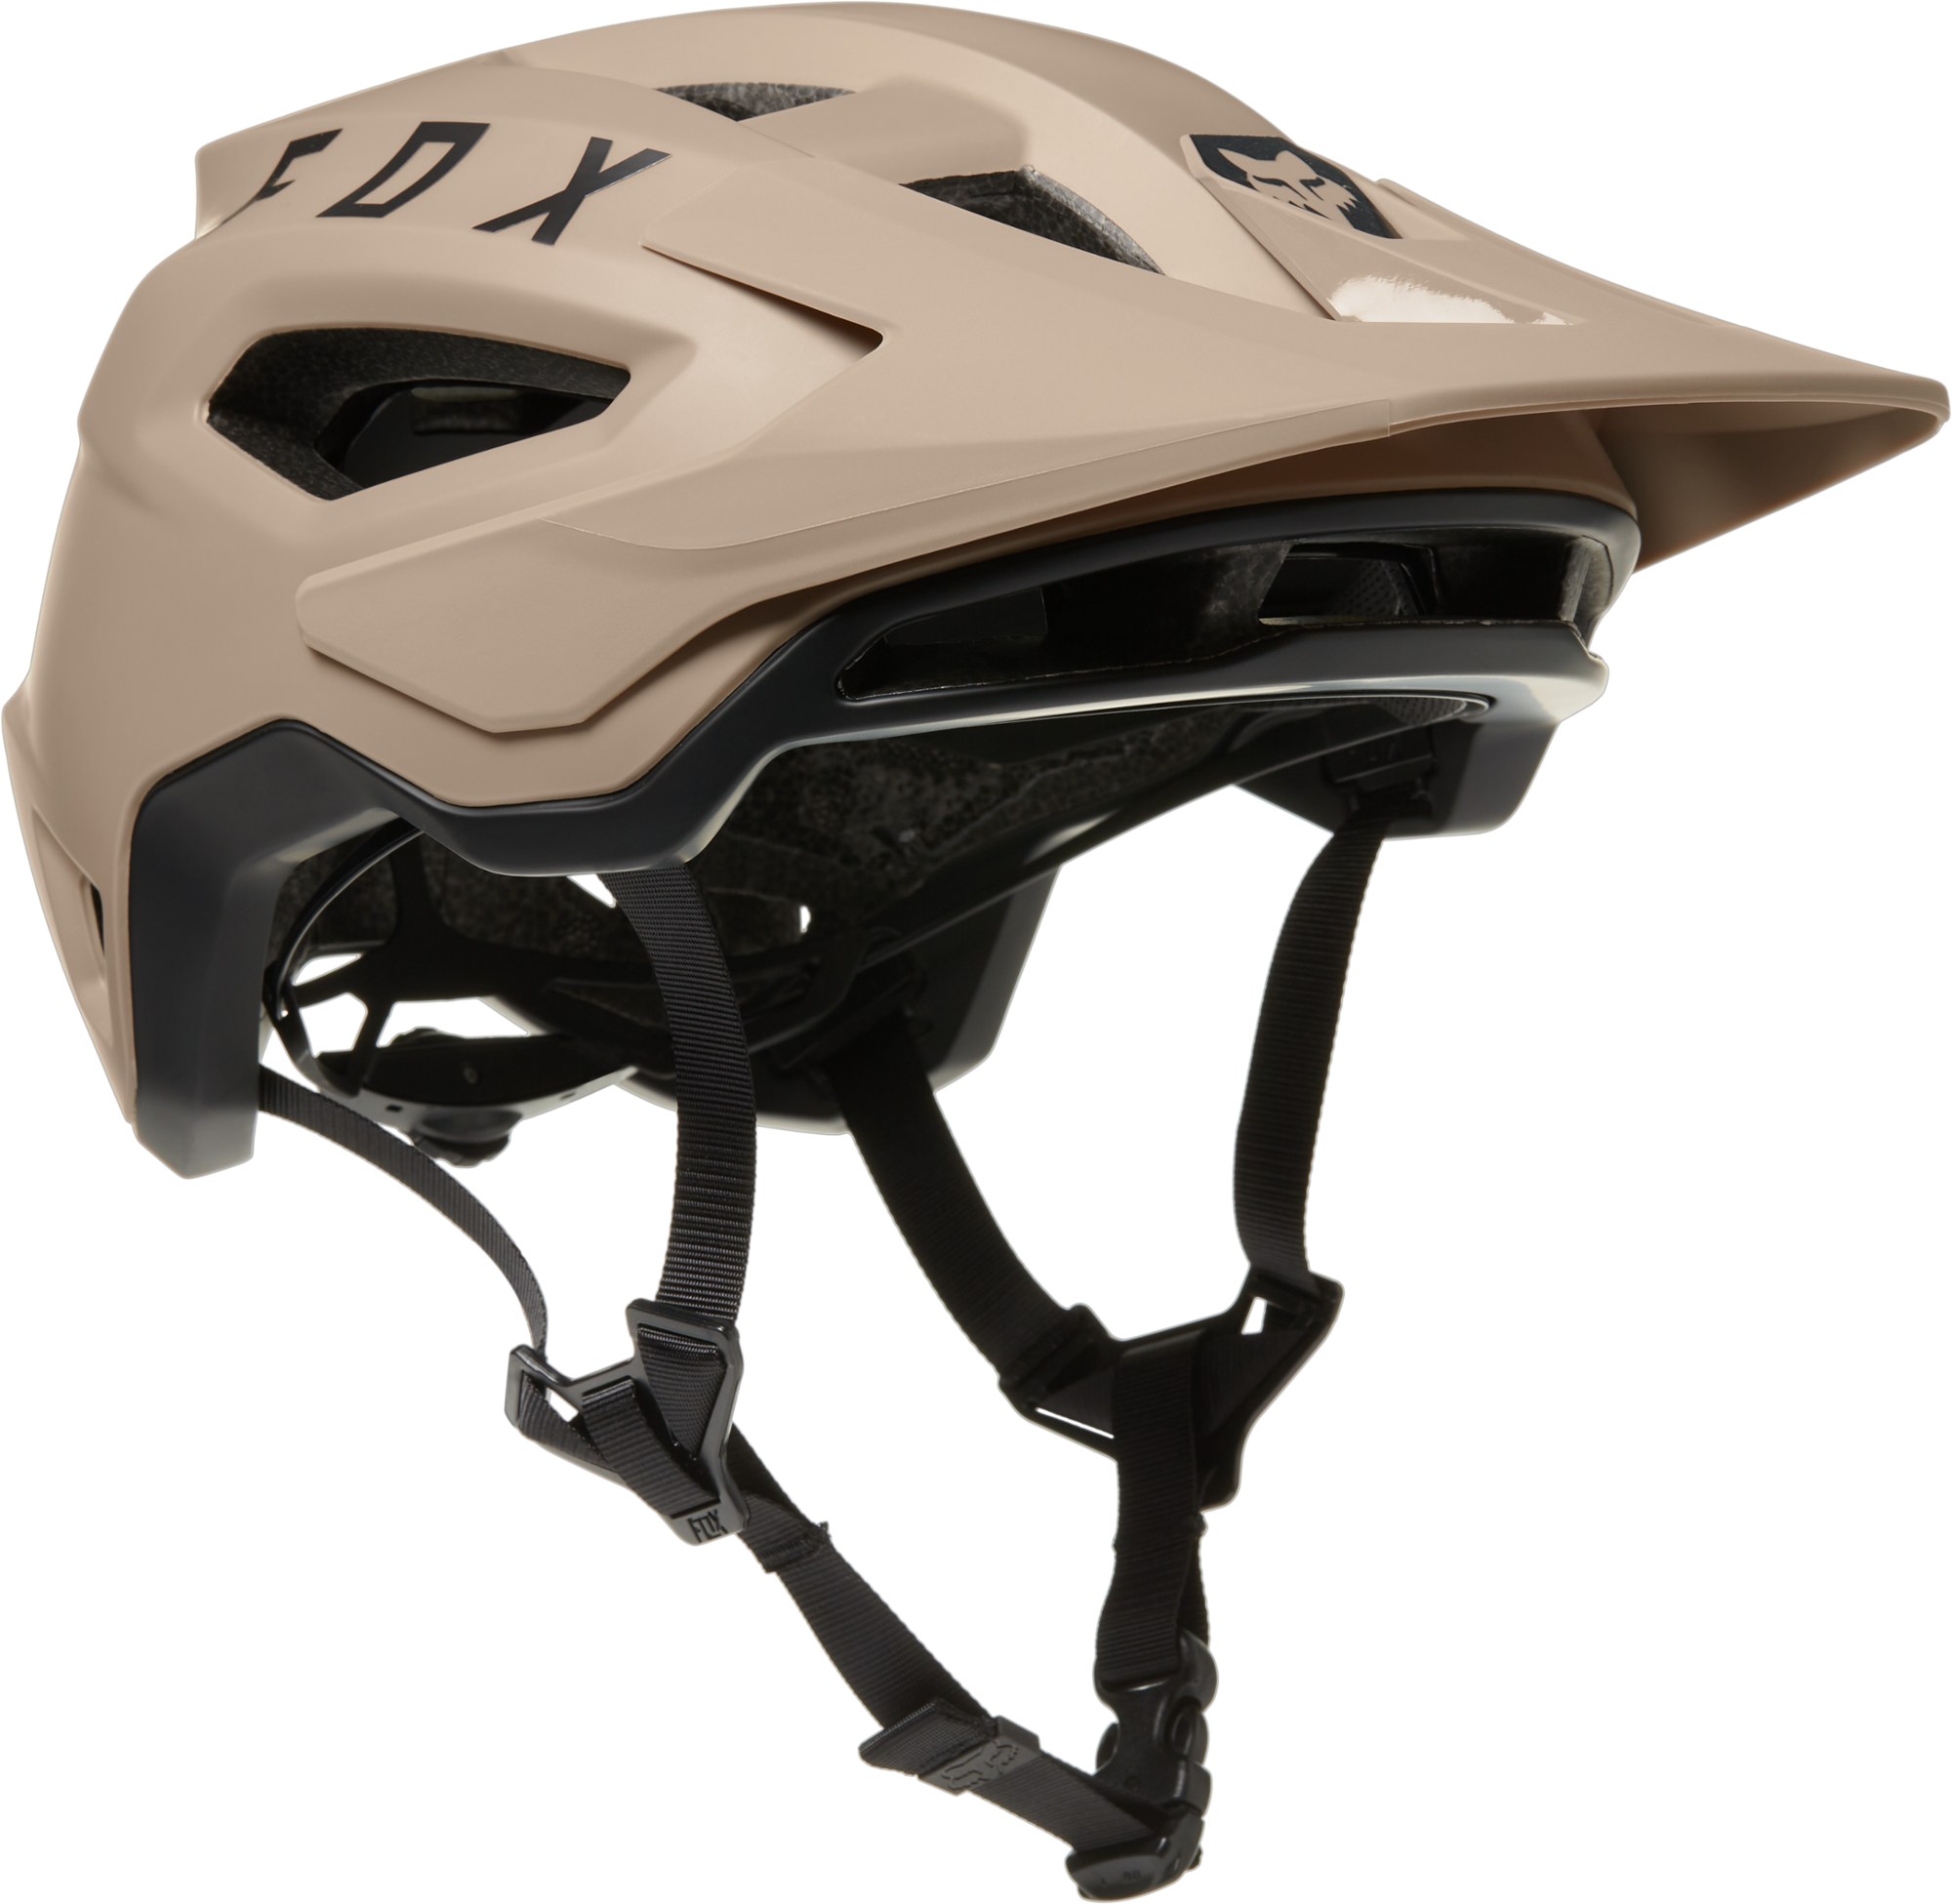 Велосипедный шлем Speedframe Mips Fox, коричневый